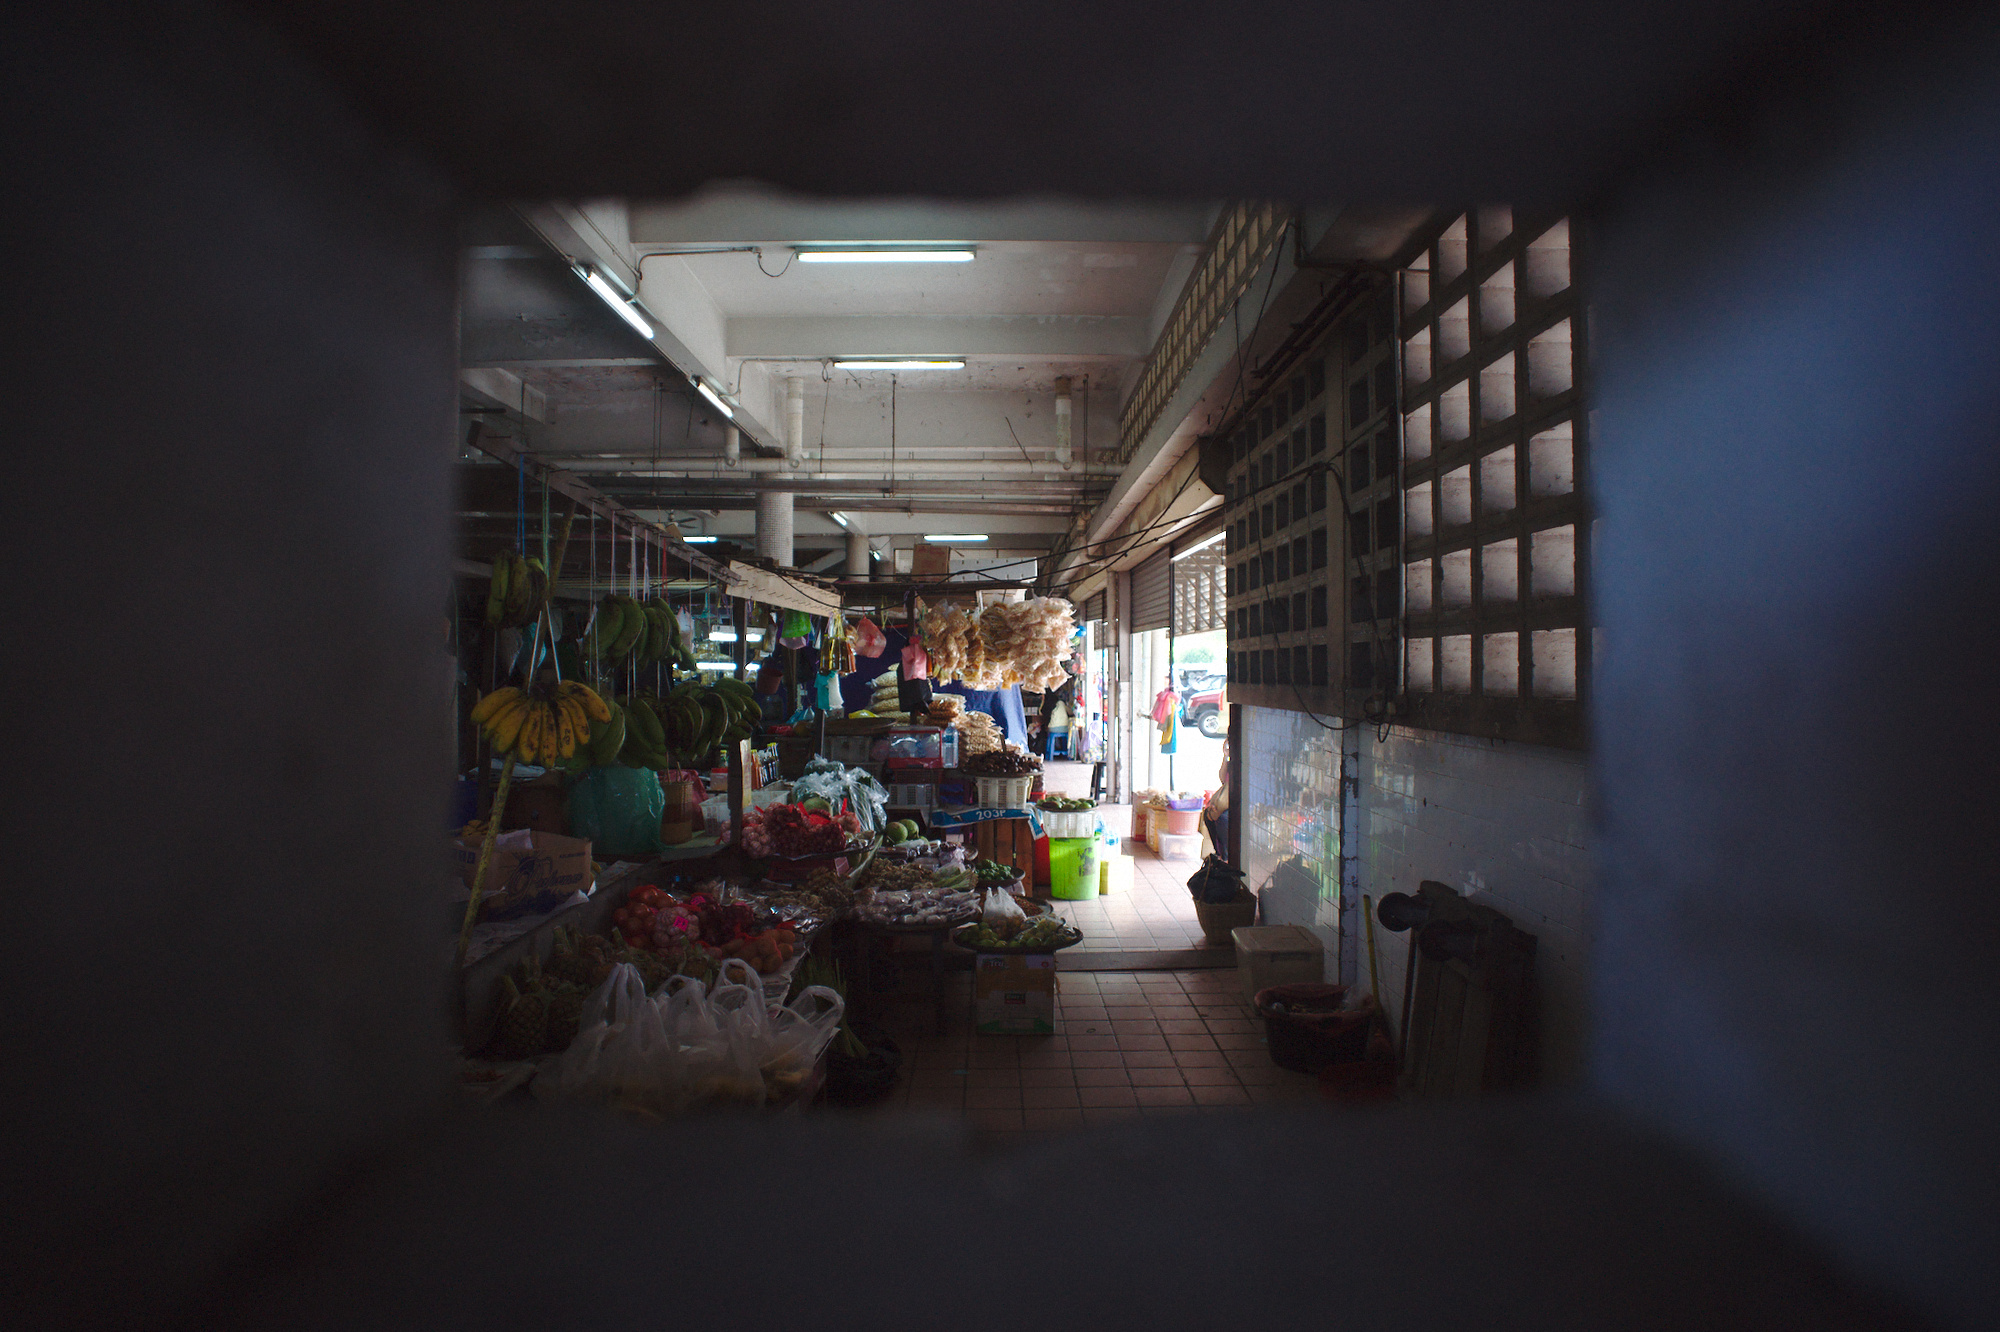 Market in Kota Kinabalu, Borneo